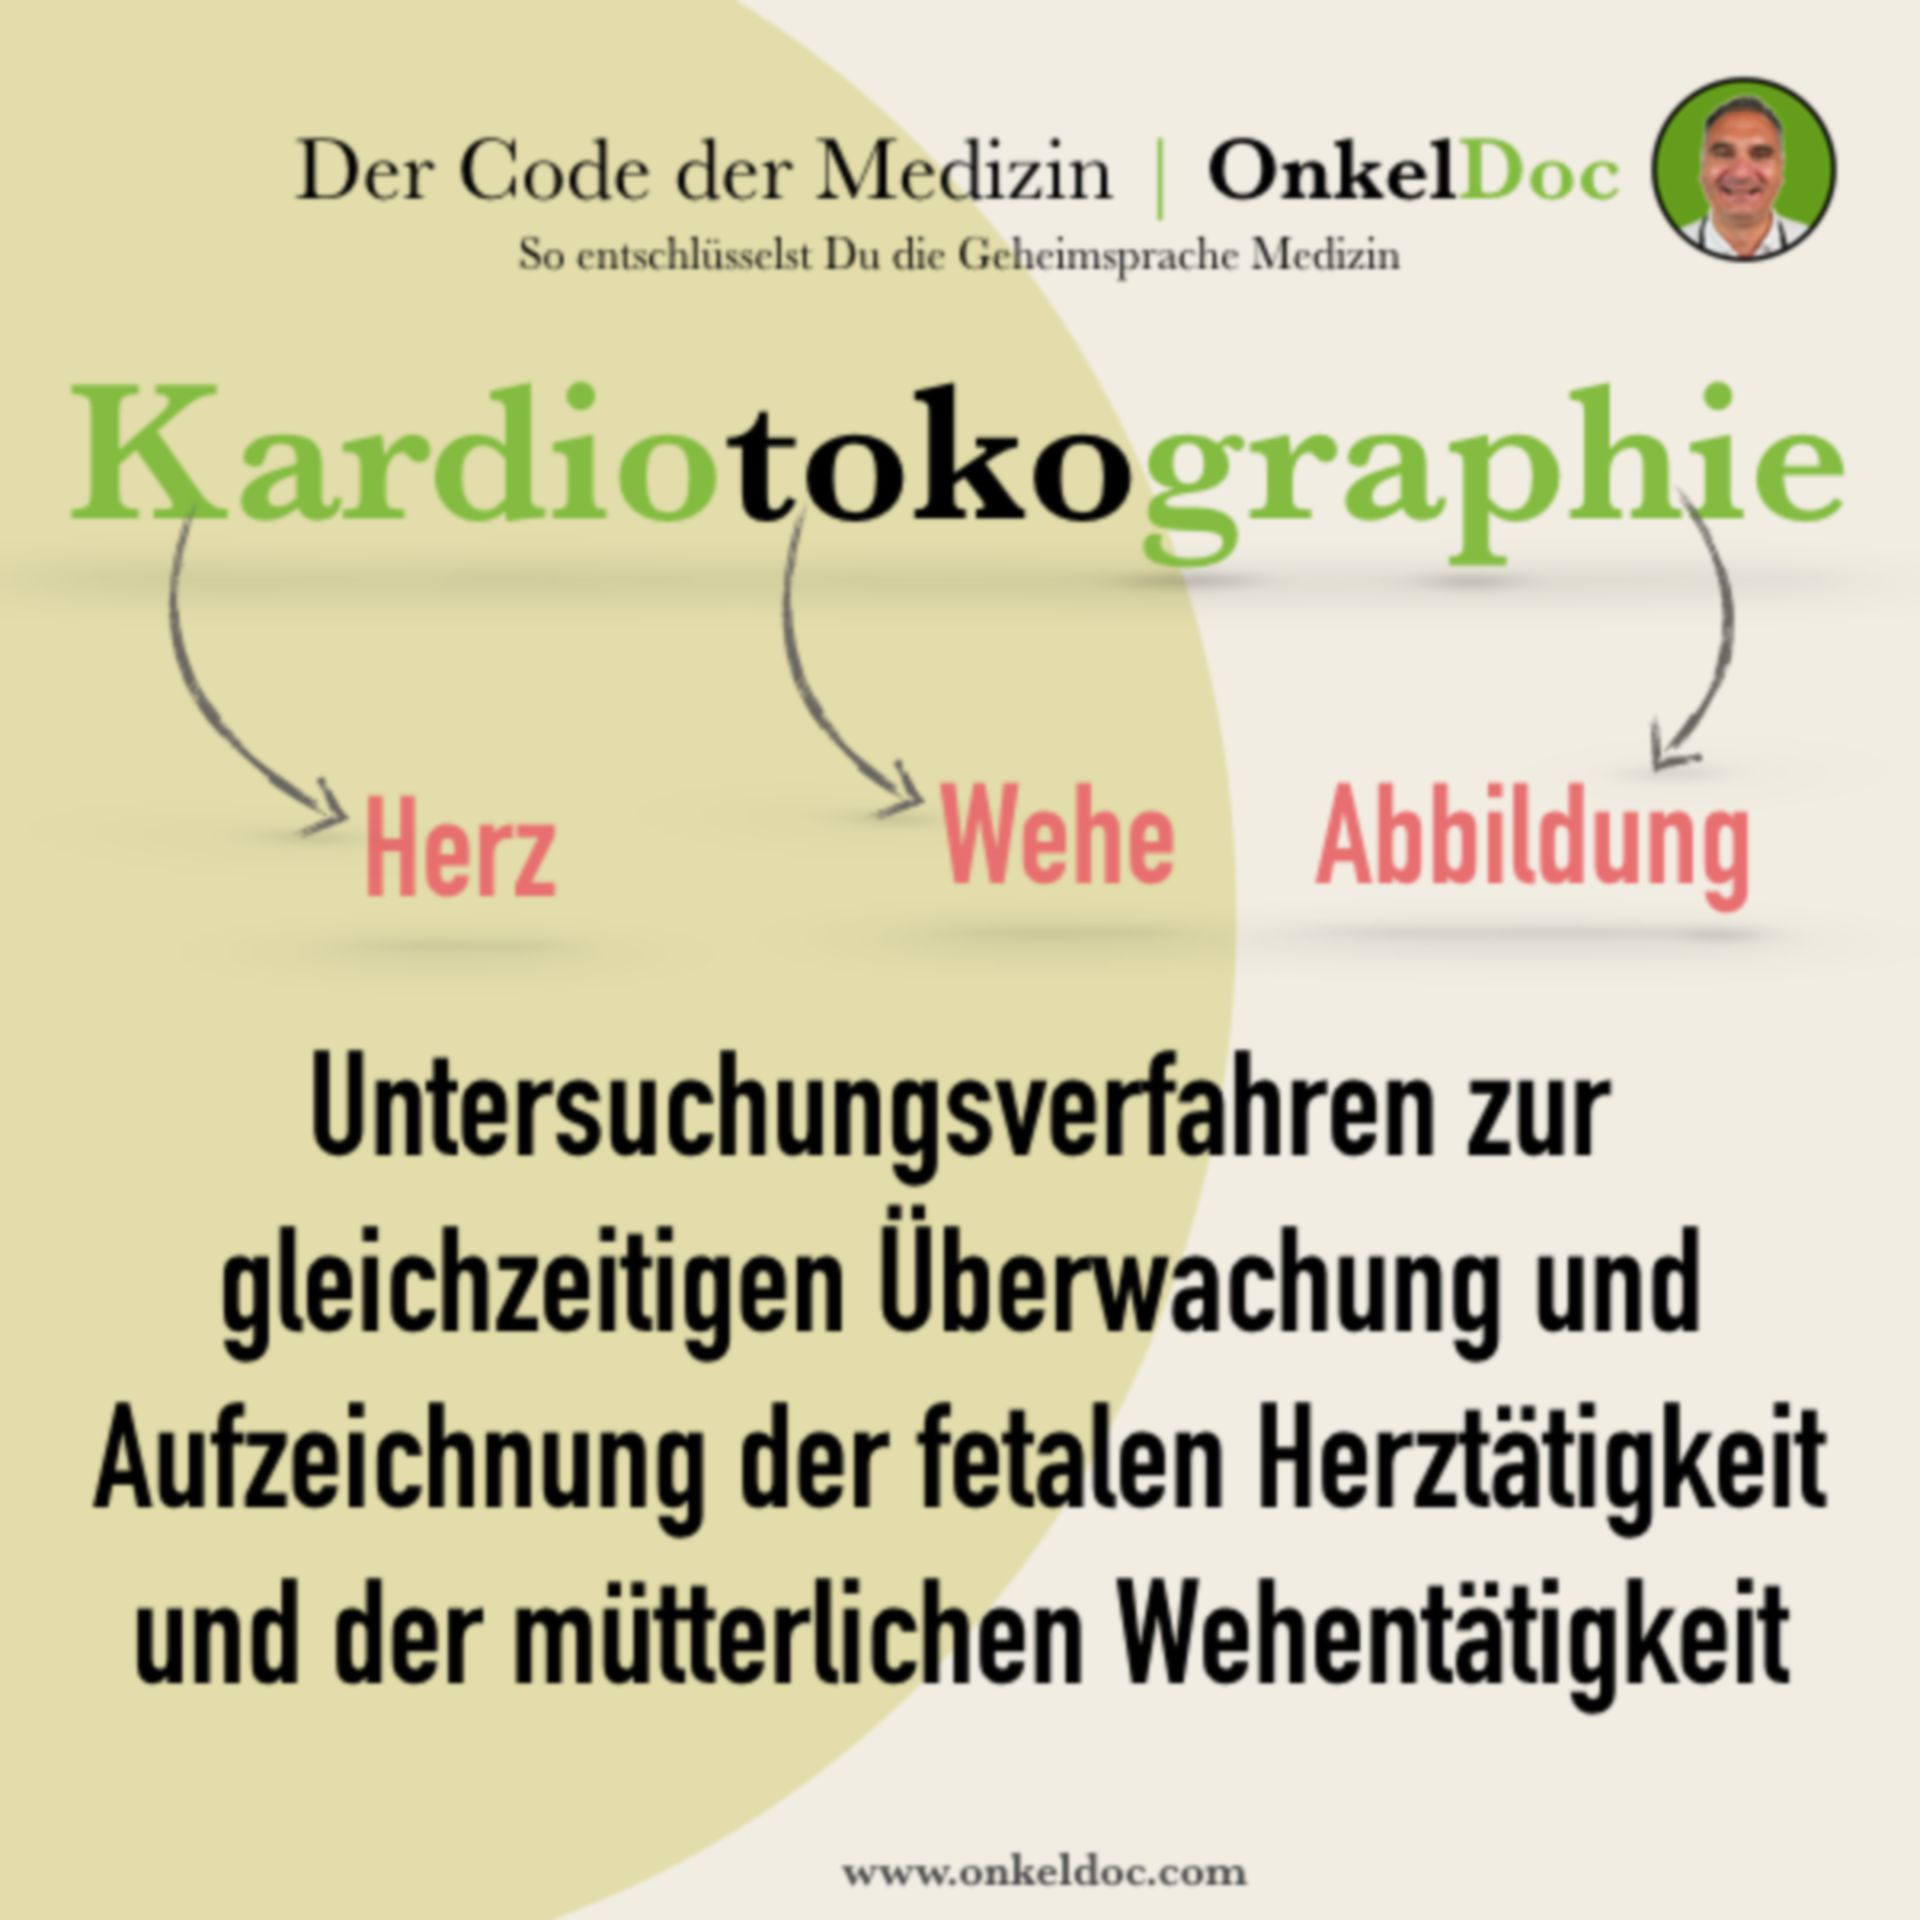 Der Code der Kardiotokographie